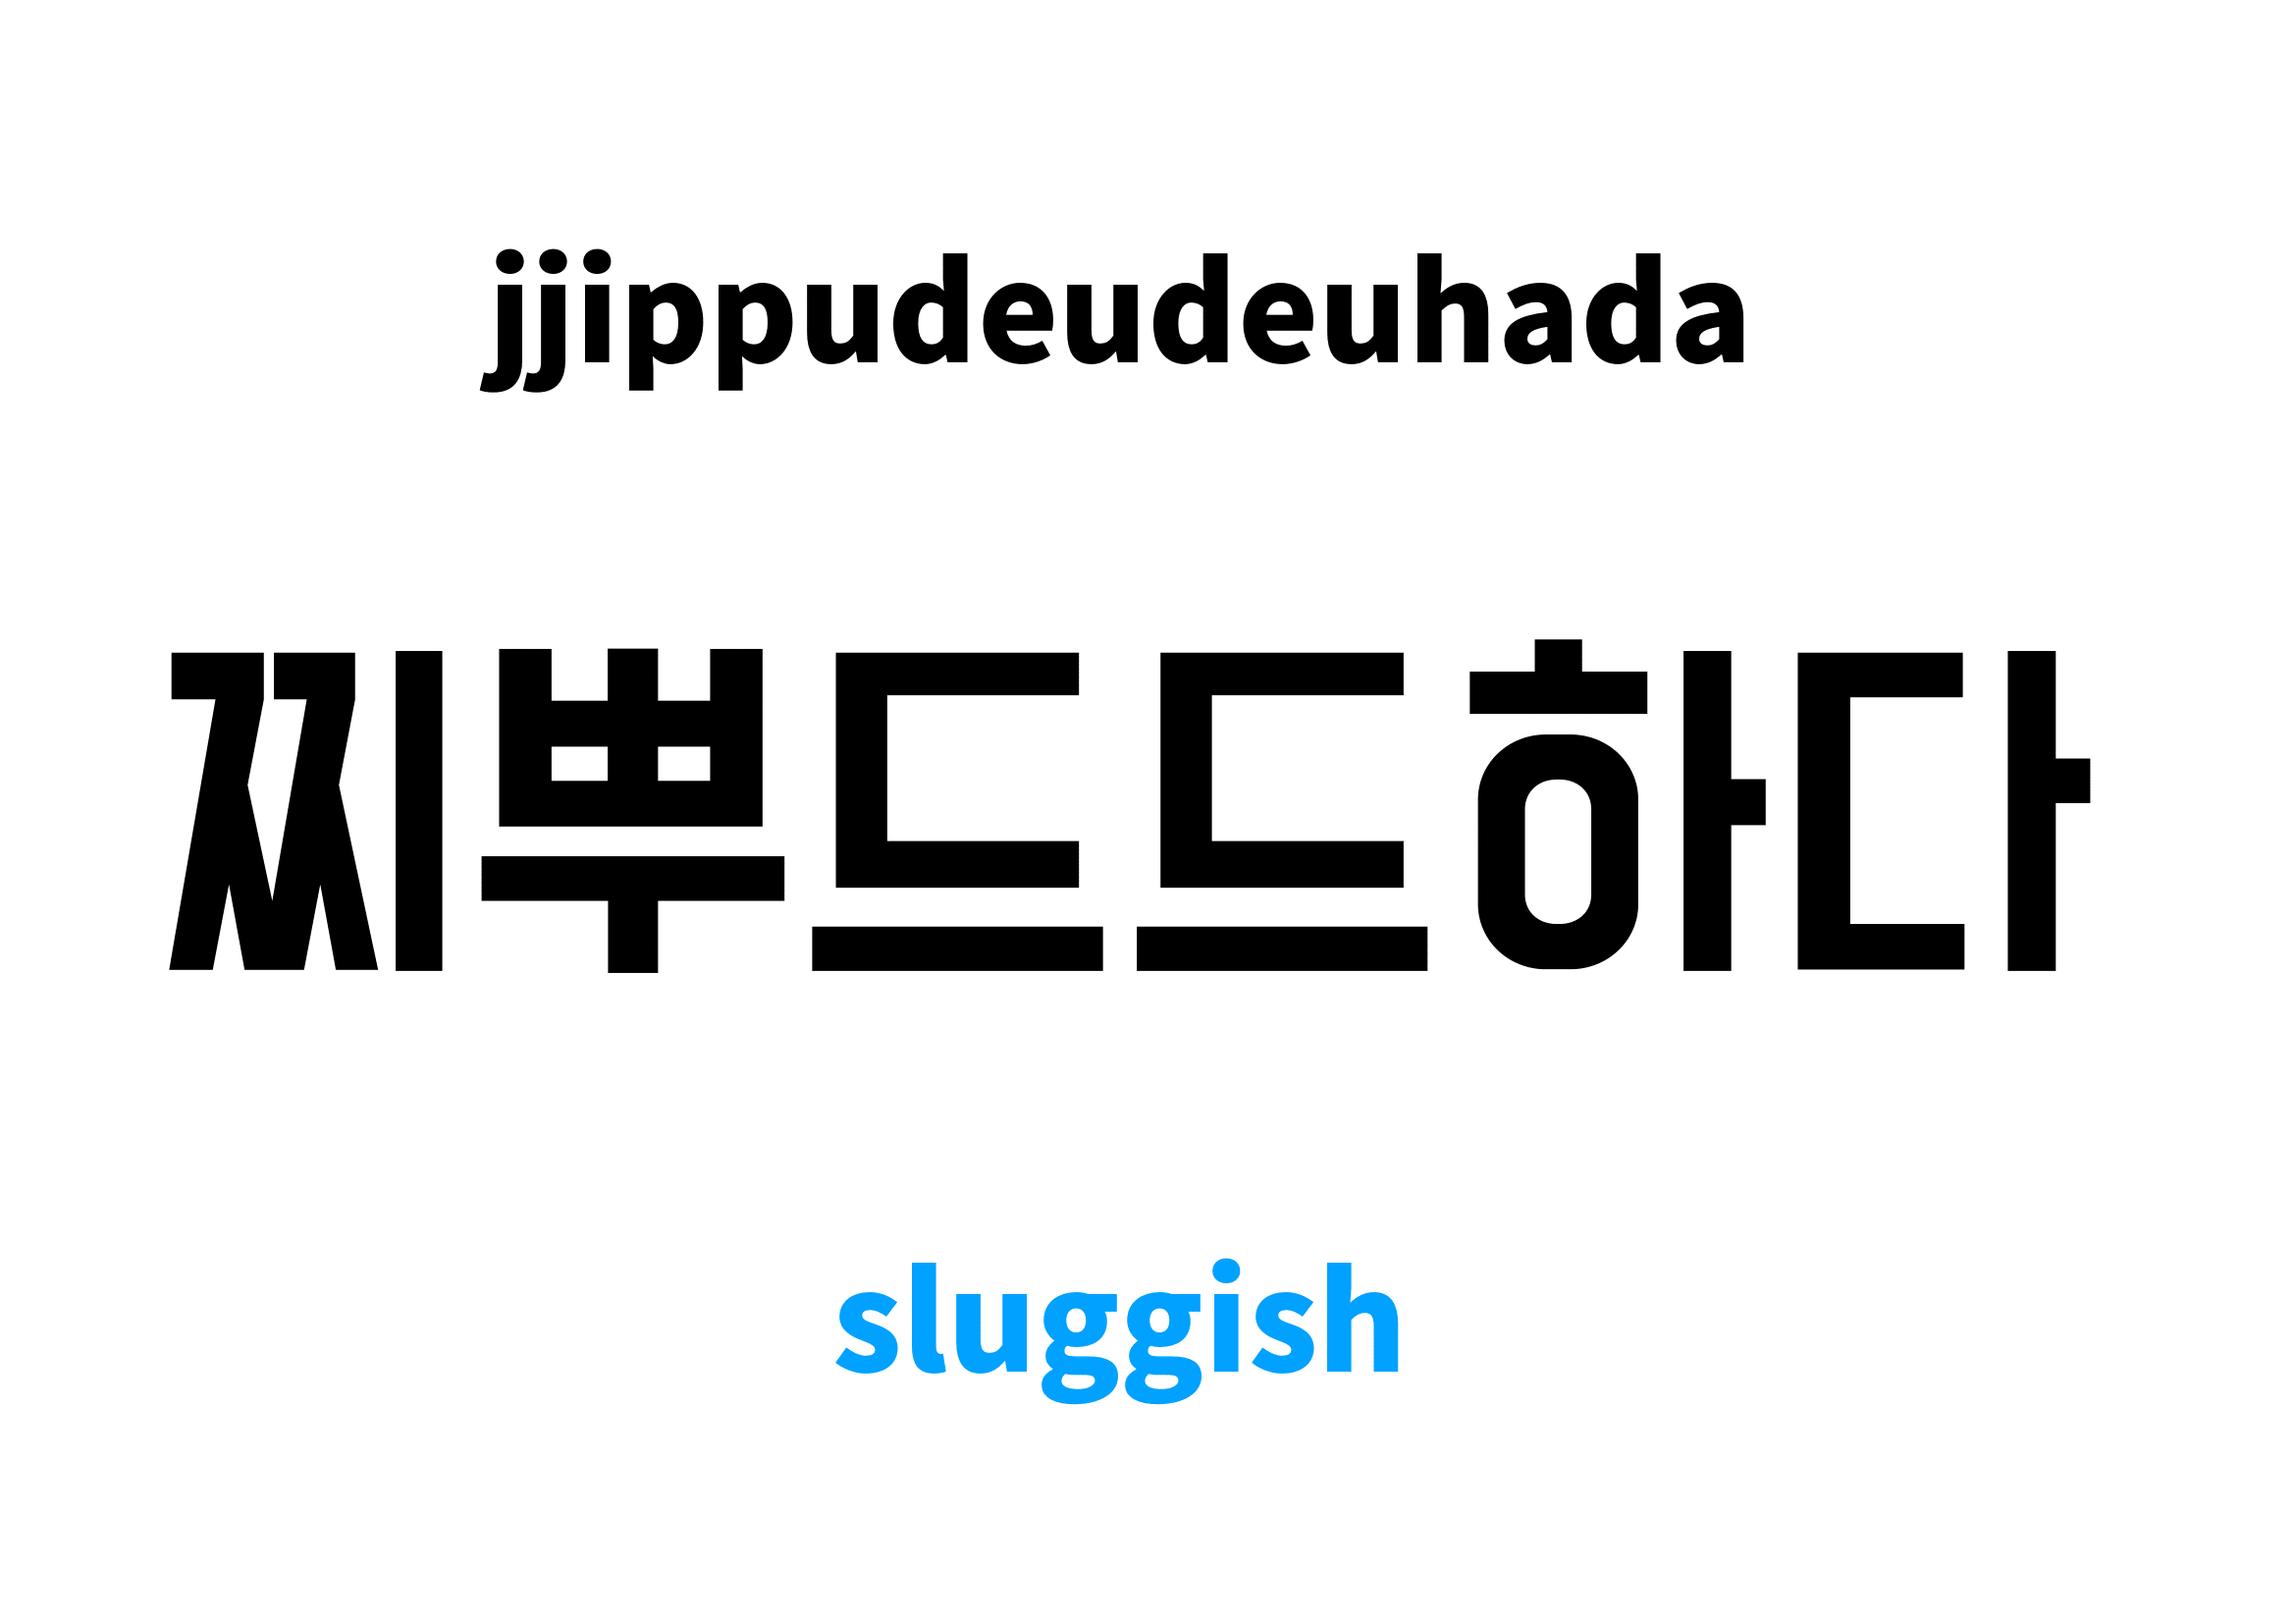 sluggish in Korean, 찌뿌드드하다 meaning